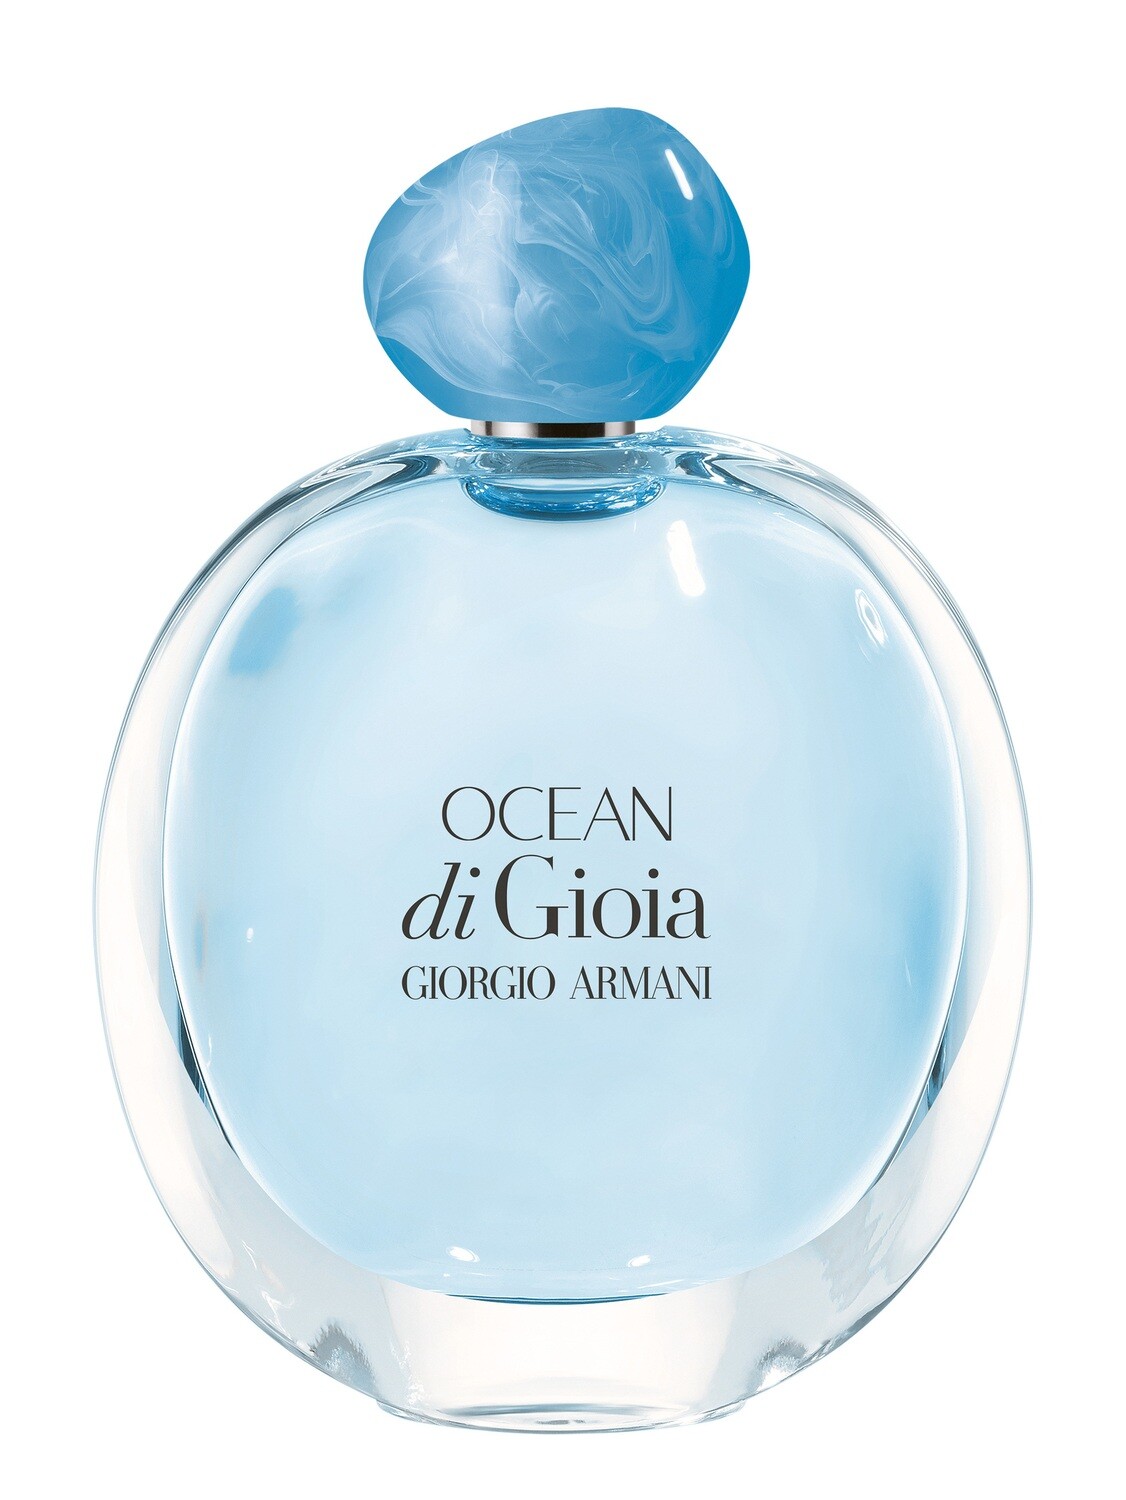 Ocean de Gioia - Giorgio Armani